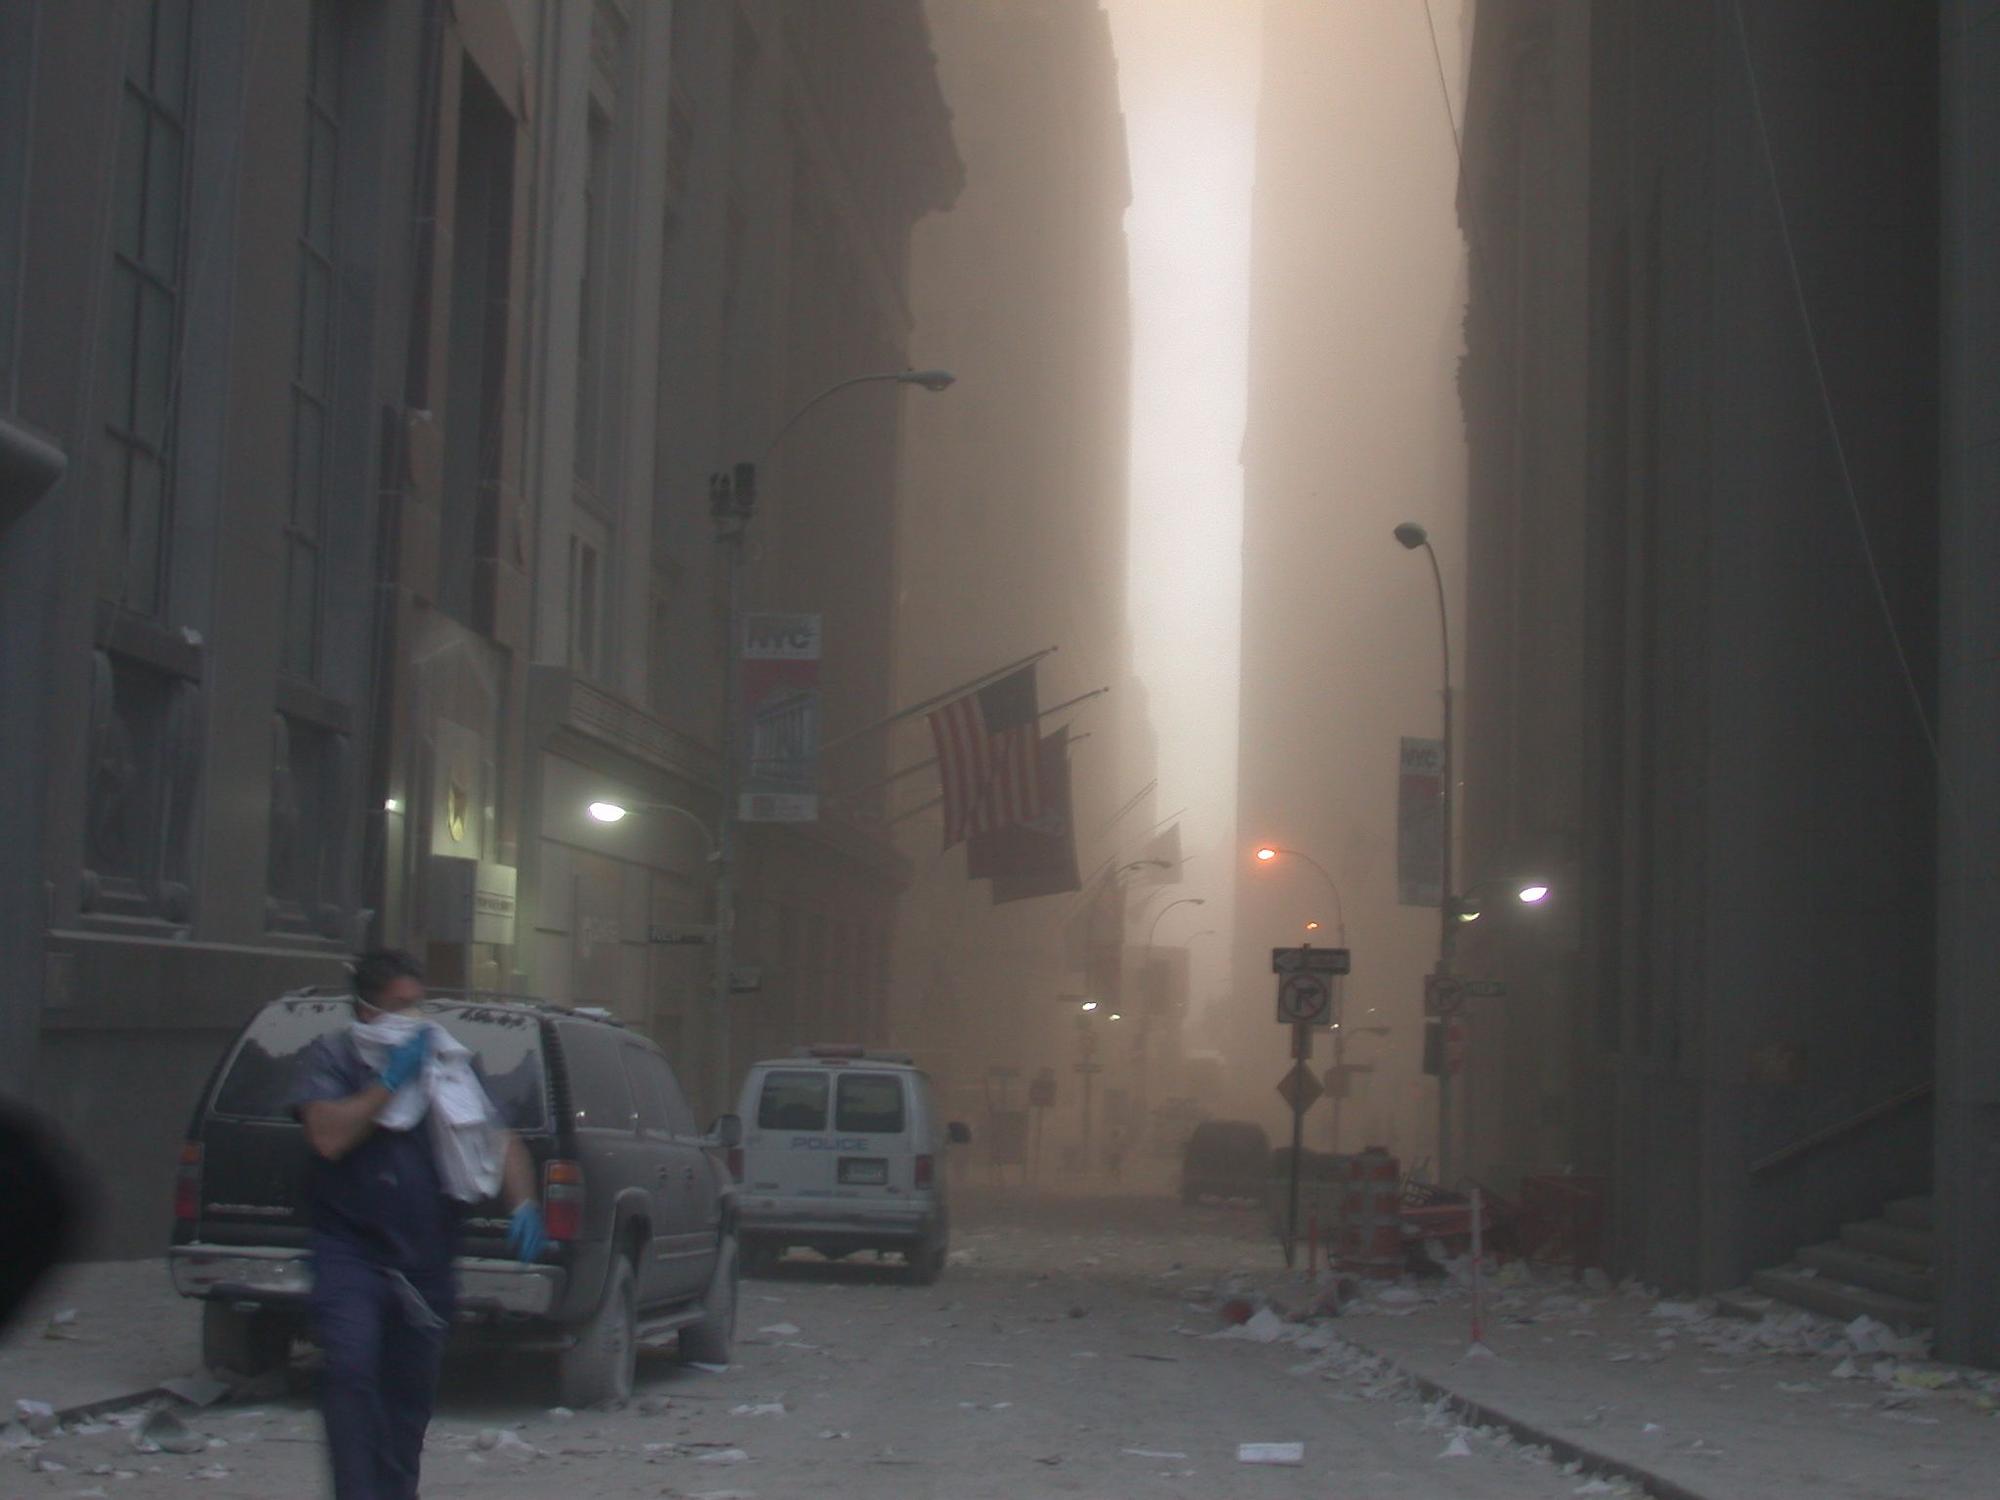 Imágenes nunca vistas del 11-S que han salido a la luz